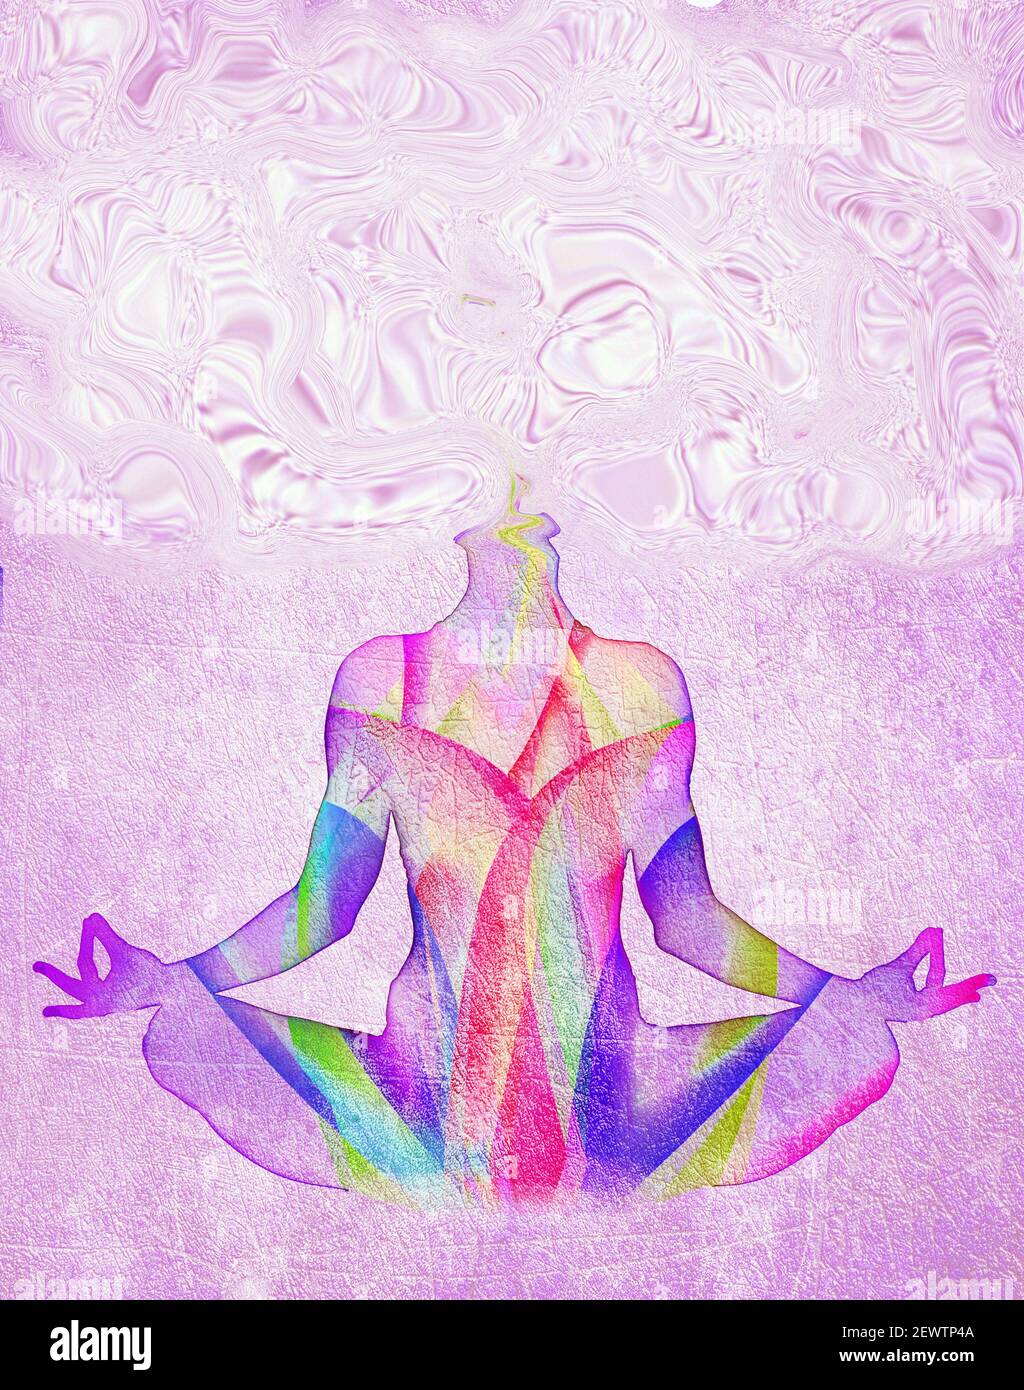 méditation concept illustration colorée Banque D'Images